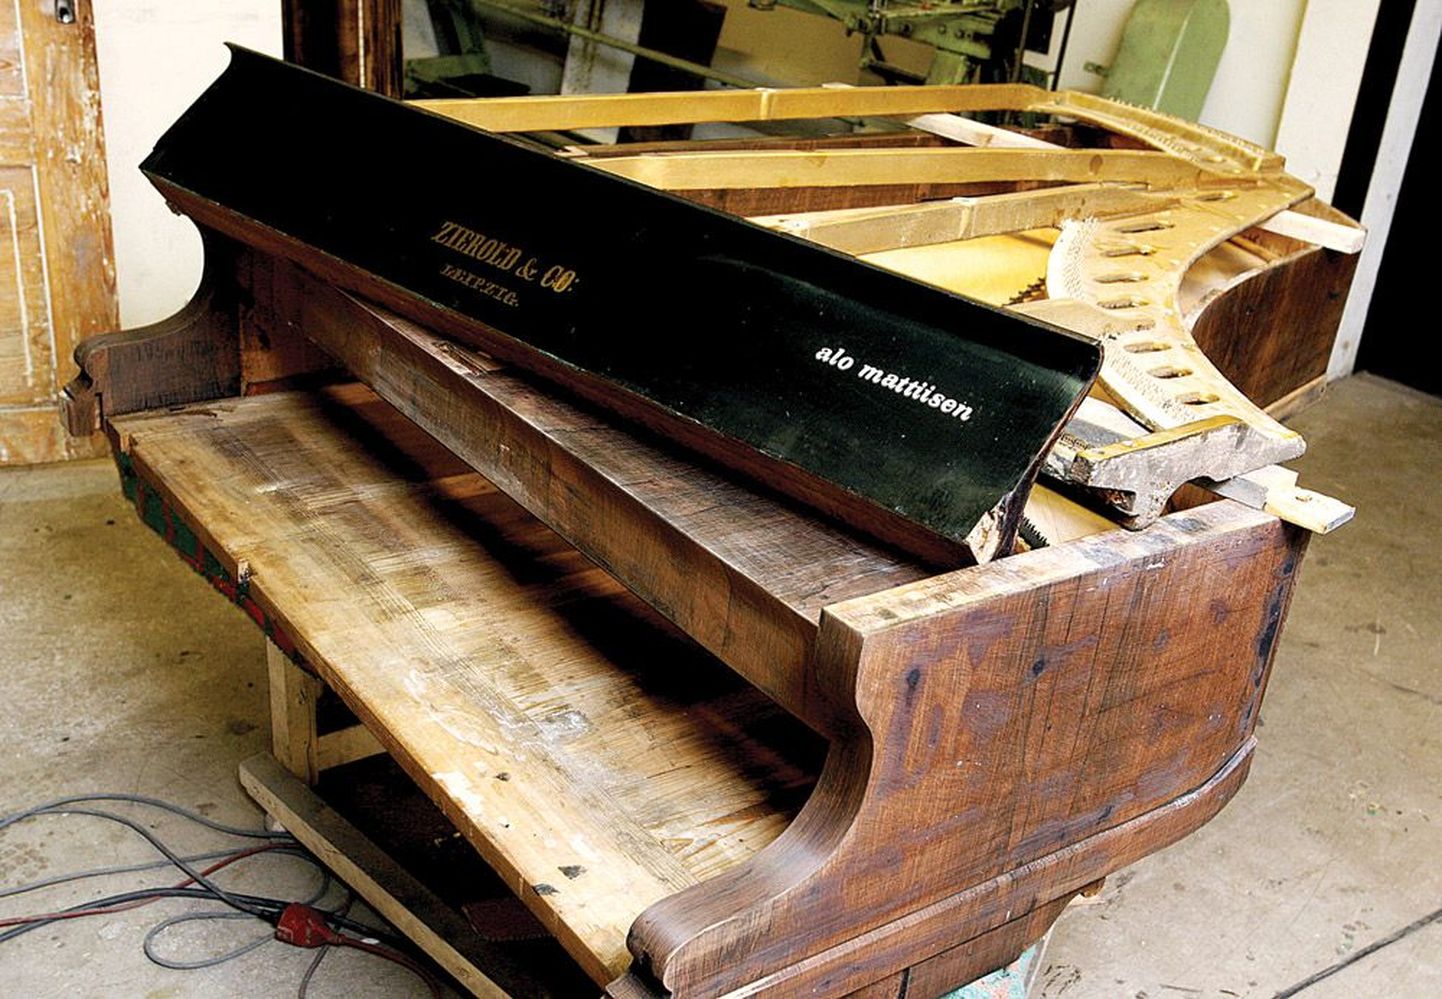 Helilooja Alo Mattiisen on klaveri klappkaanele nõukaaegsetest kleeptähtedest kokku seadnud oma nime. Klaverivabriku nimi Zierold & Co on märk sellest, et pillil on vanust vähemalt 100 aastat.